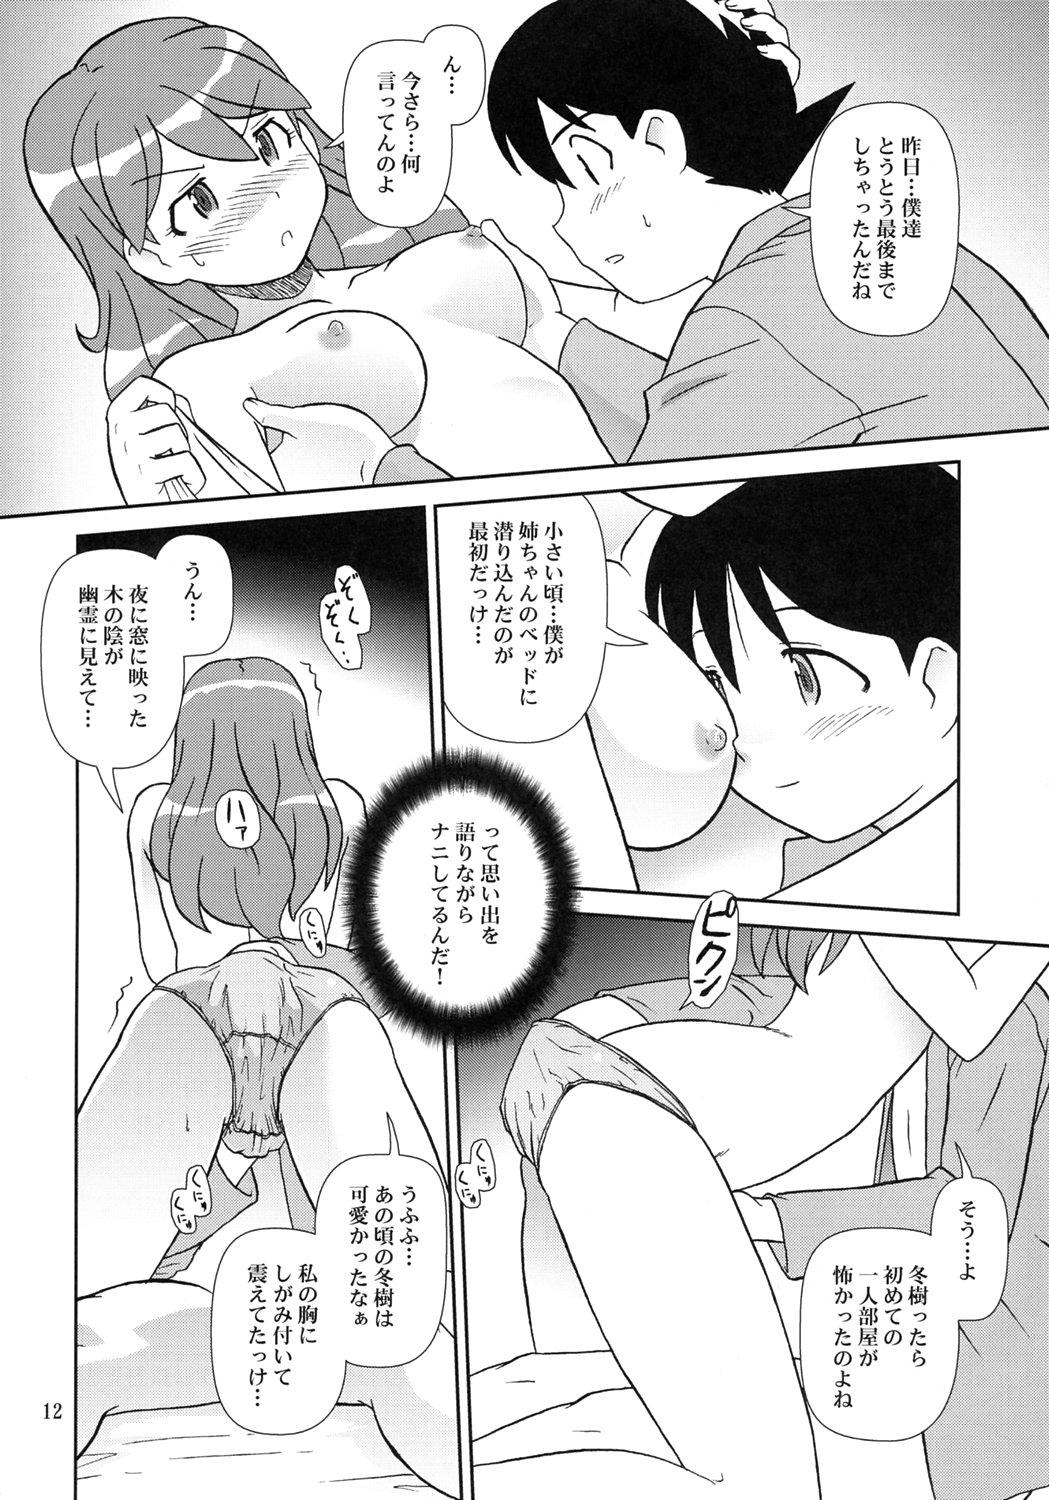 Sis Kokoro ga Mondai - Keroro gunsou Amatuer - Page 11